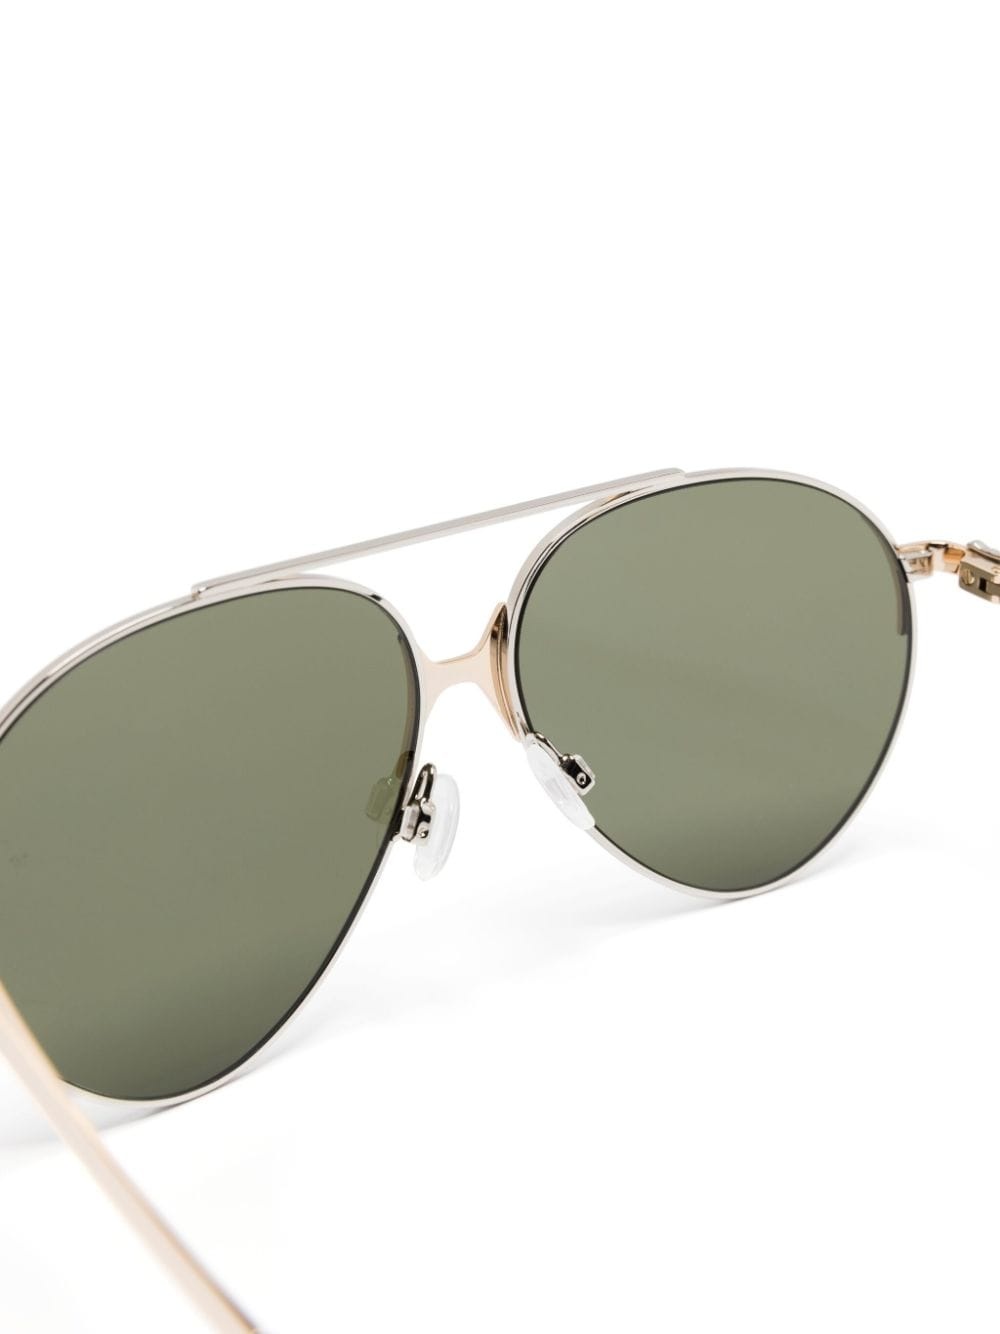 Elkton pilot-frame sunglasses - 3